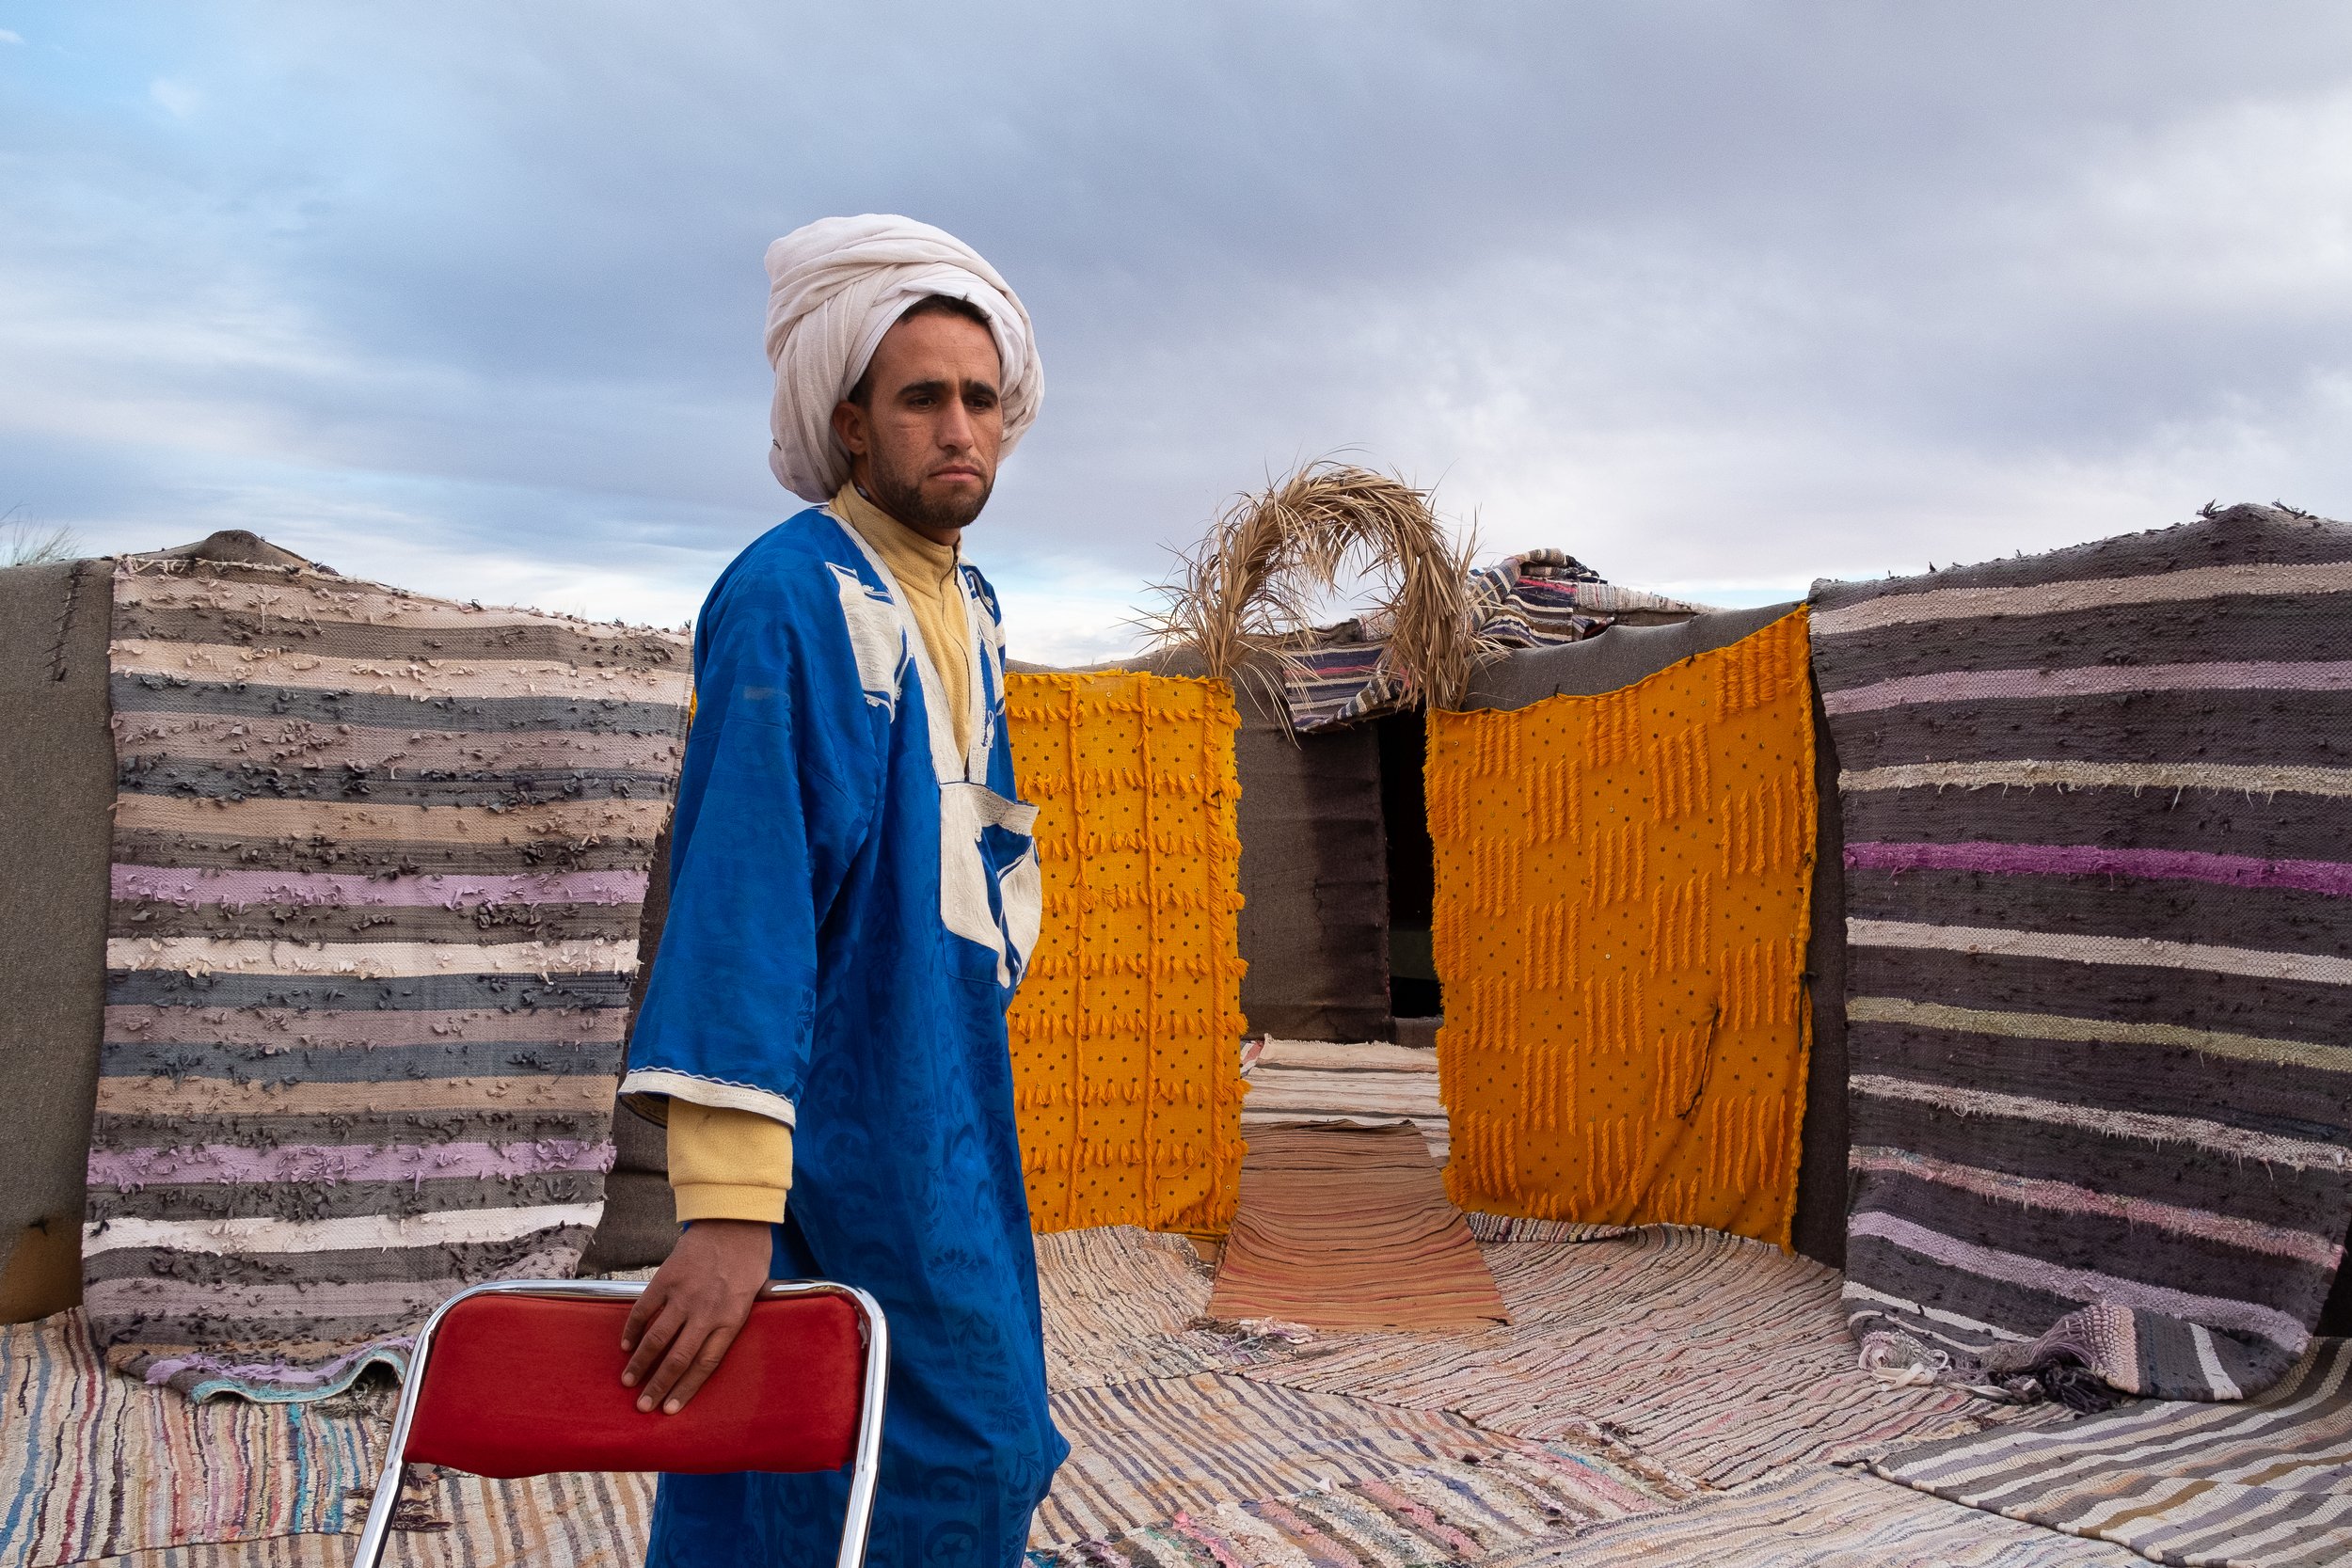 Mohamed. Sahara desert, Marruecos